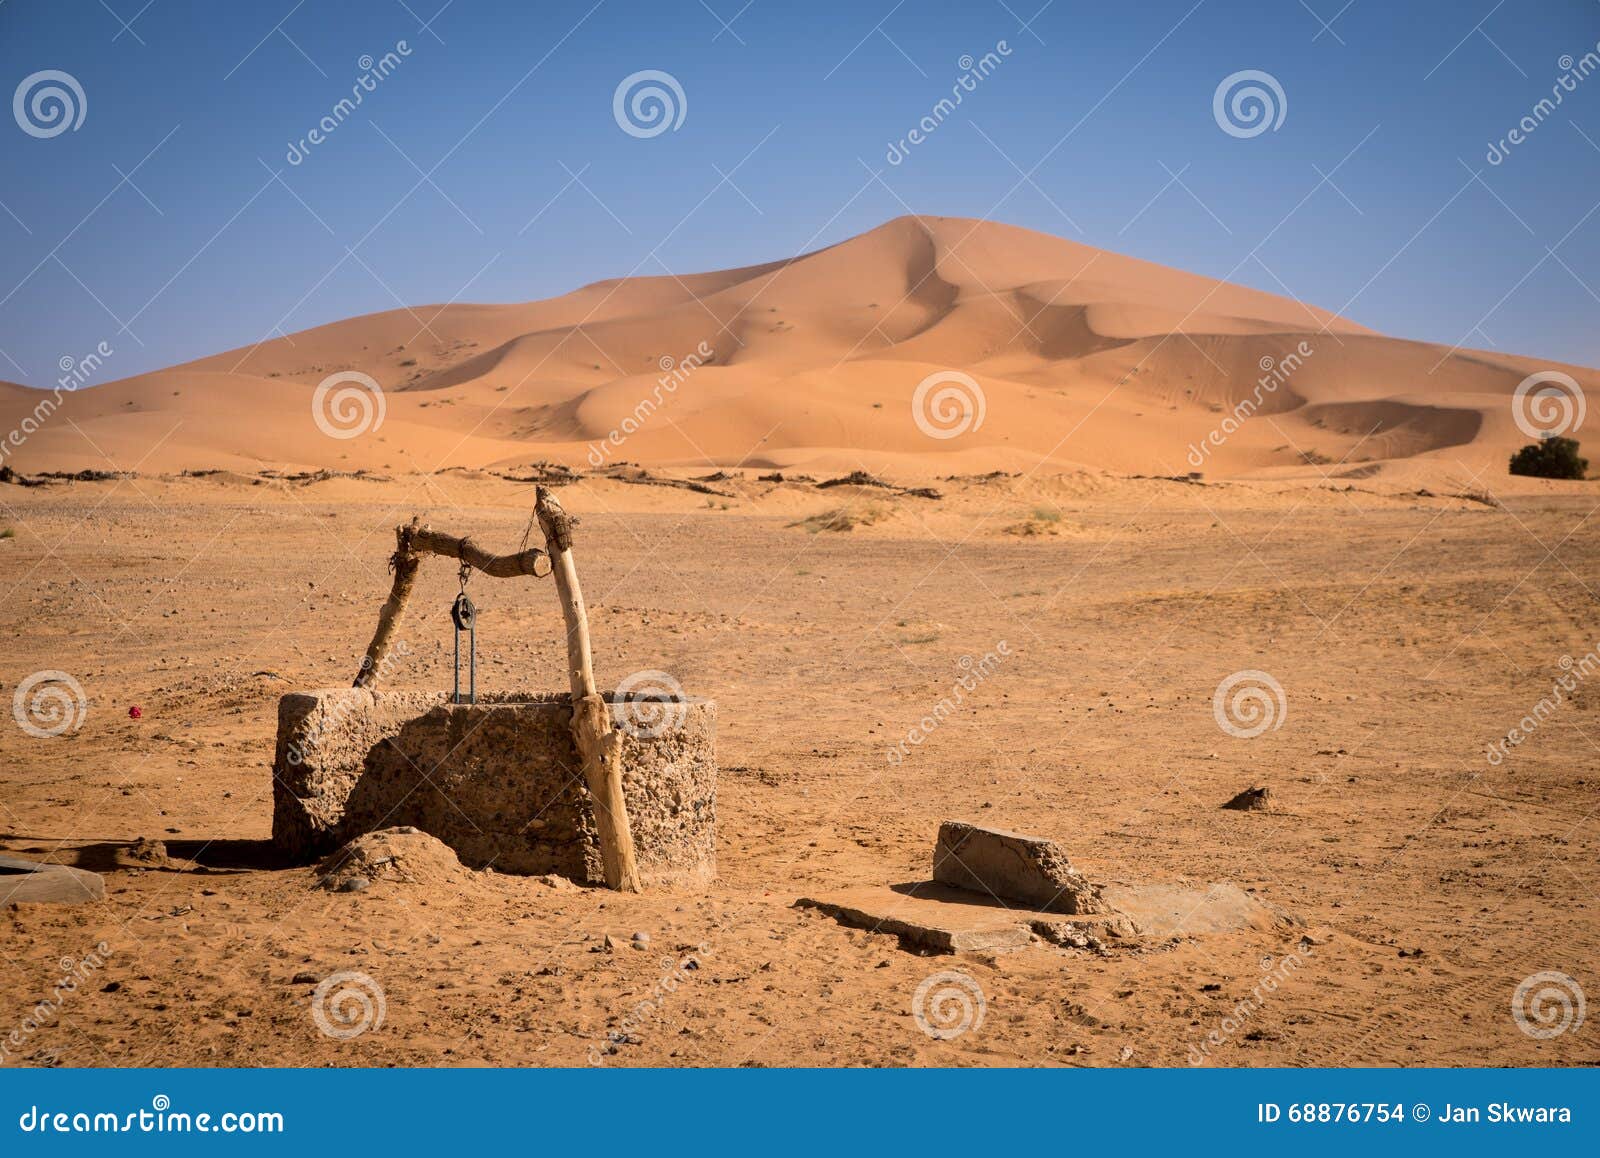 old well, morocco, sahara desert